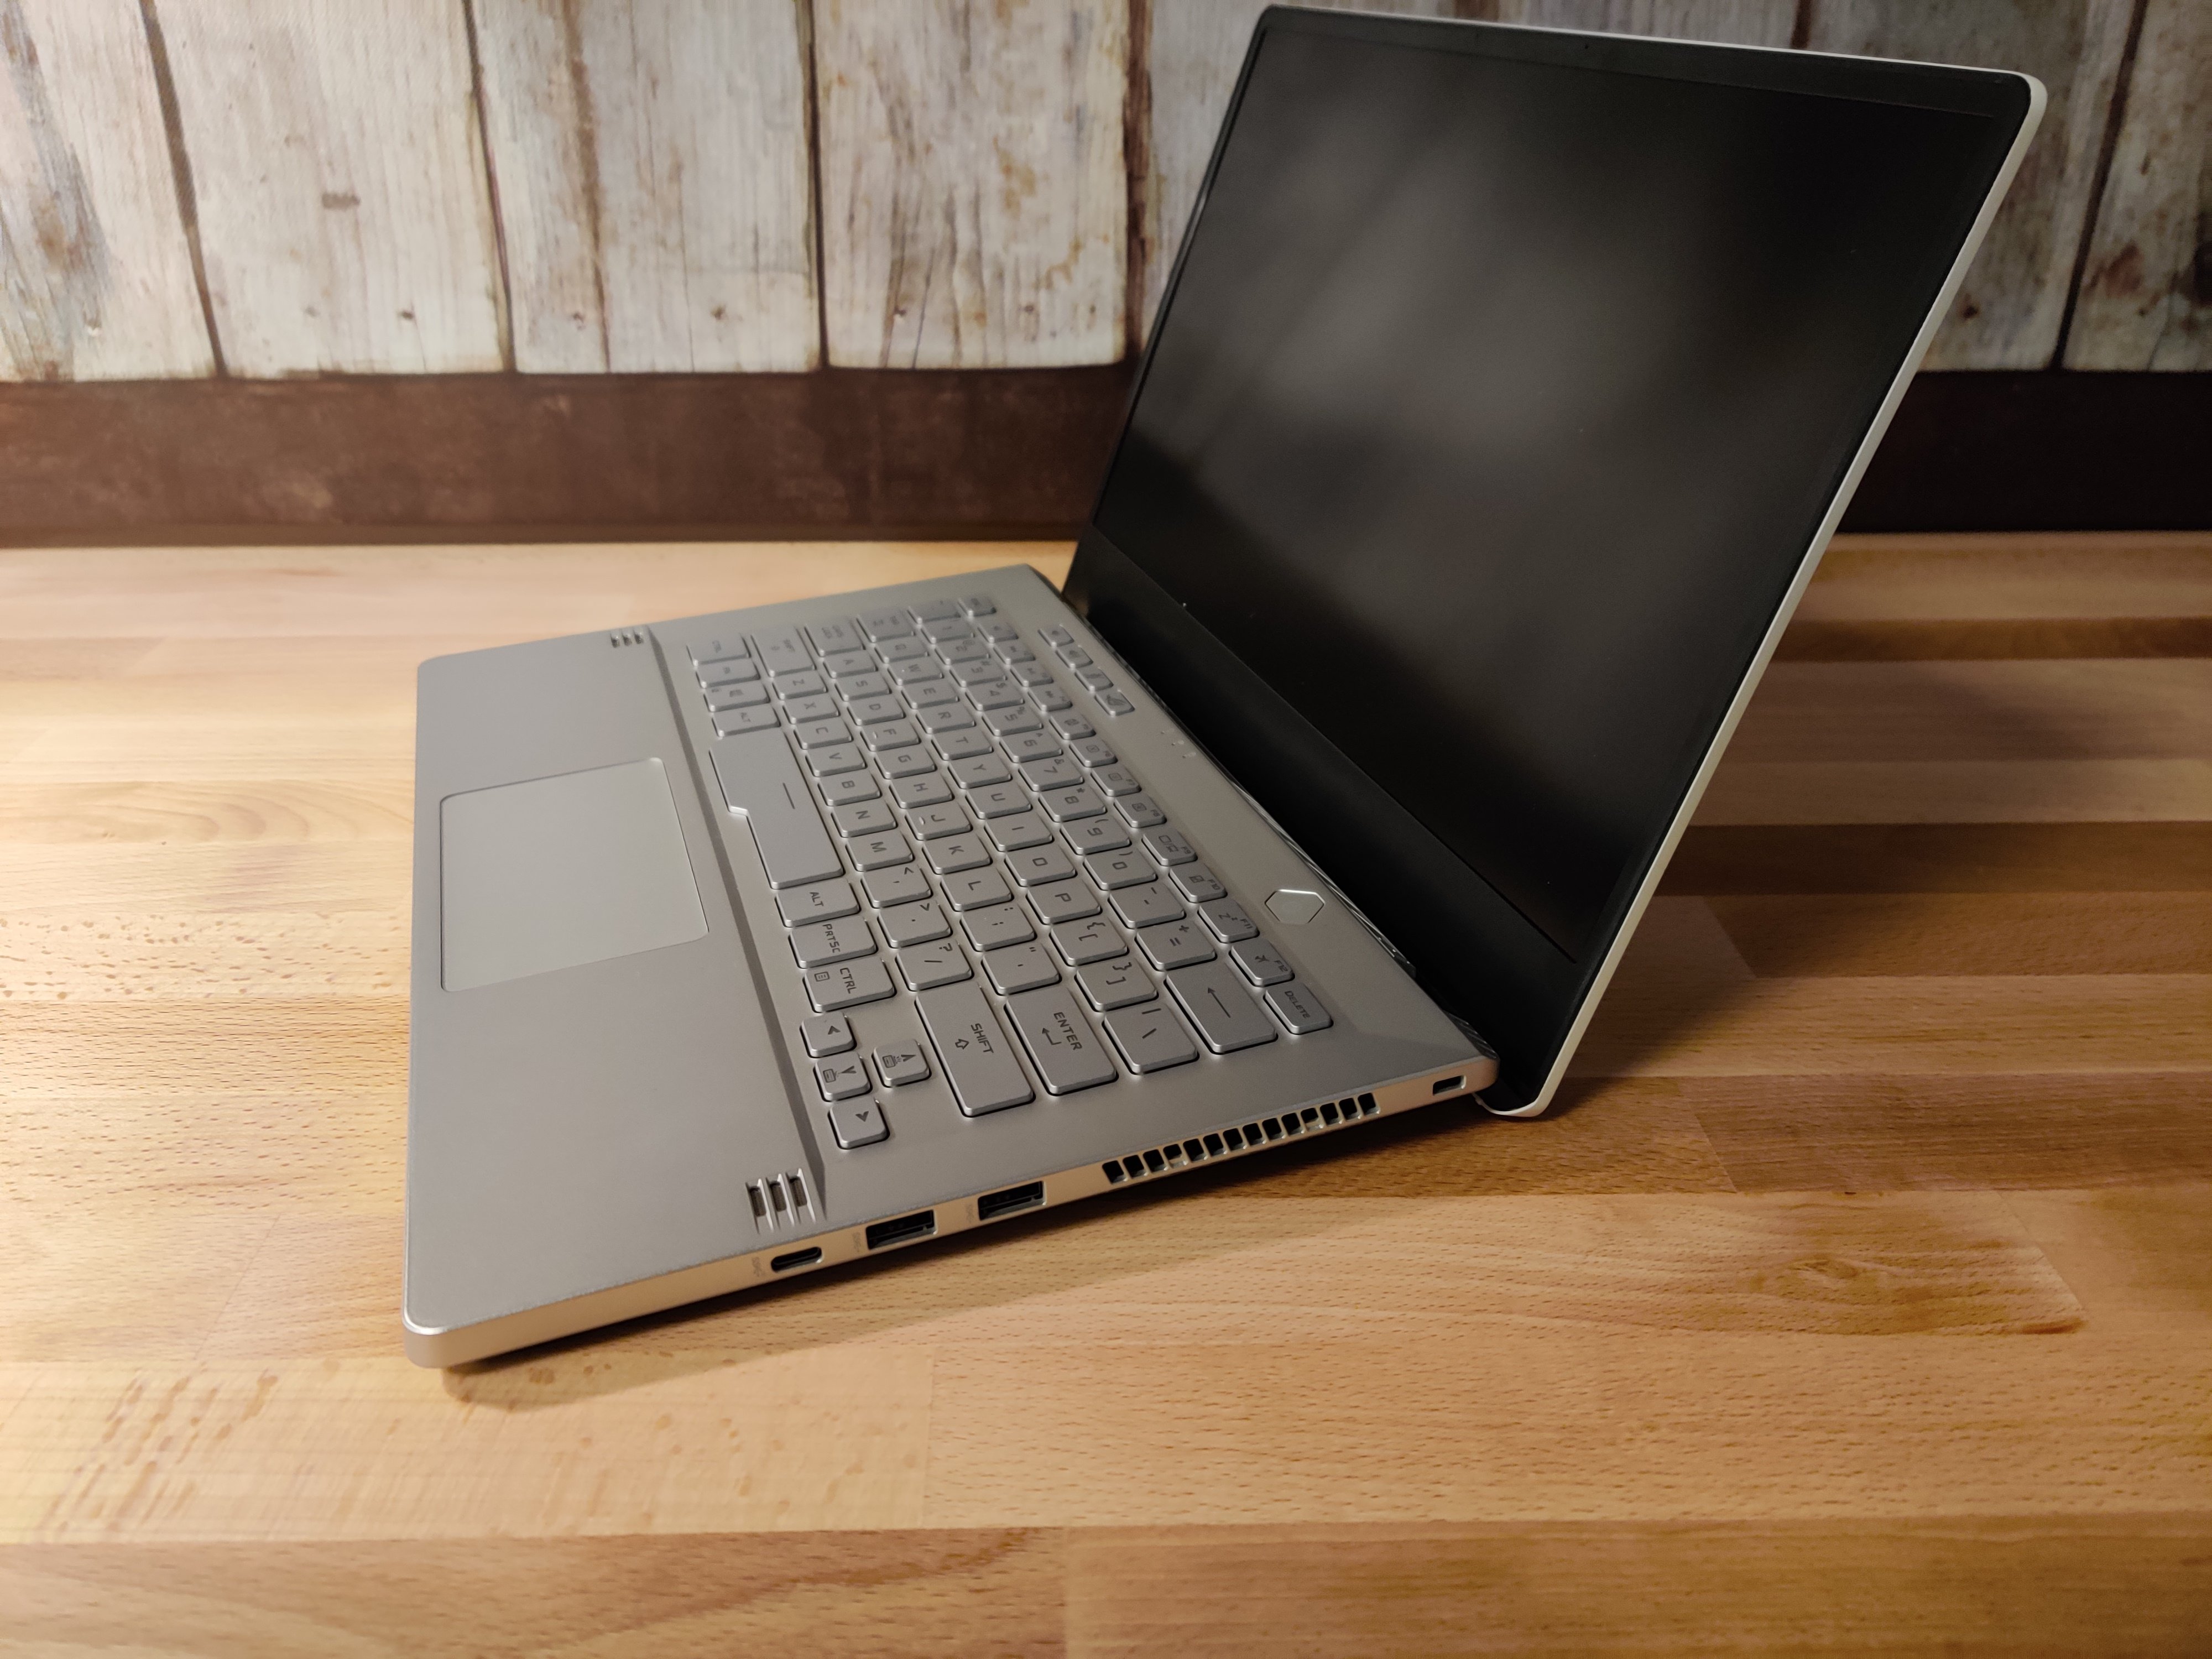 Asus dévoile son premier ordinateur portable pour gamer de 14 pouces, le  G46VW - Le Monde Numérique